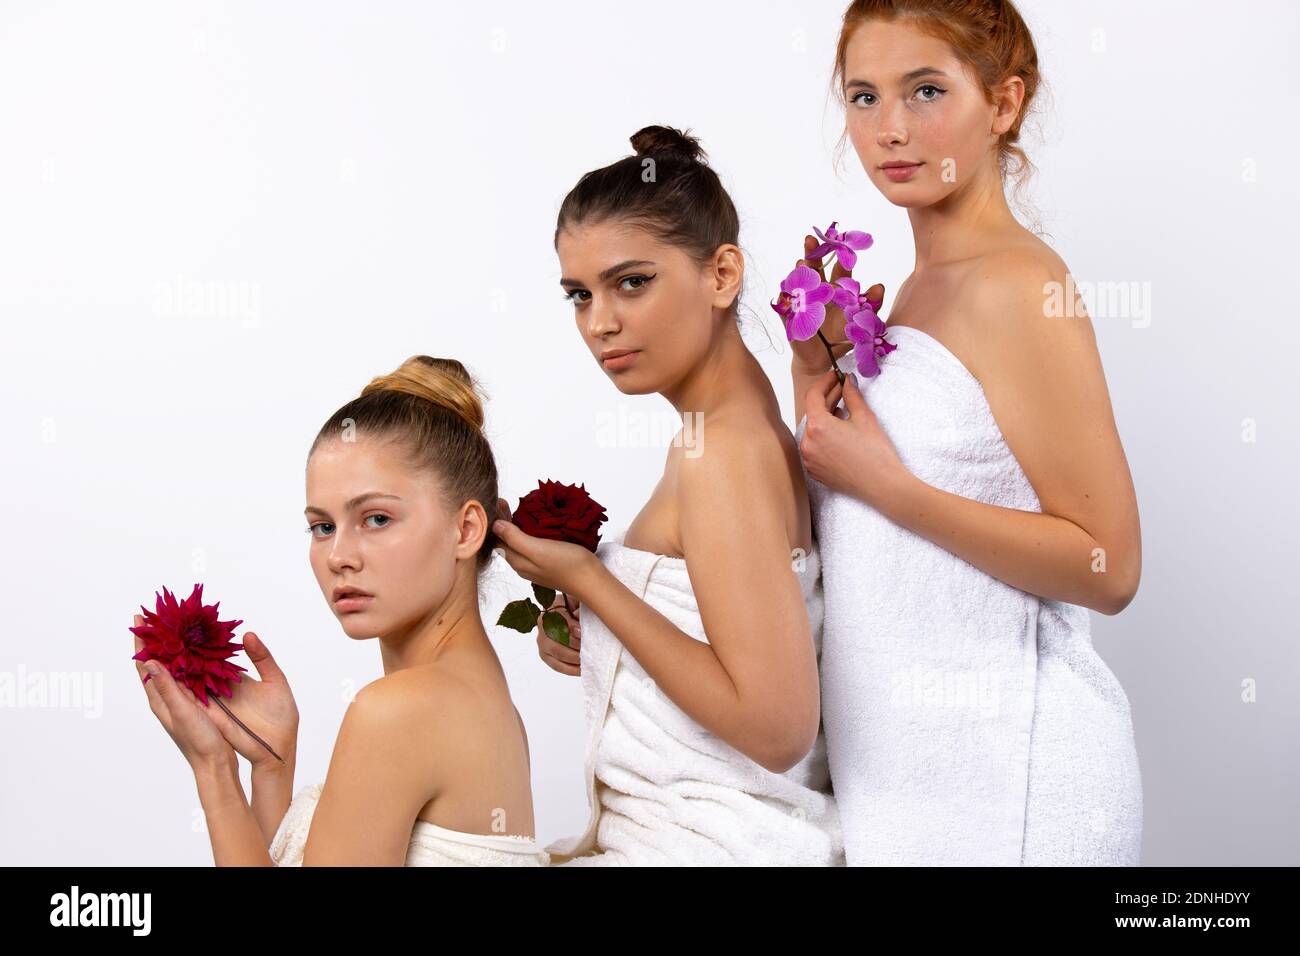 Spa-Modell Mädchen sind in weißen Handtüchern gewickelt und halten natürliche Blumen. Posiert in Form von Pyramide auf weißem Hintergrund. Stockfoto